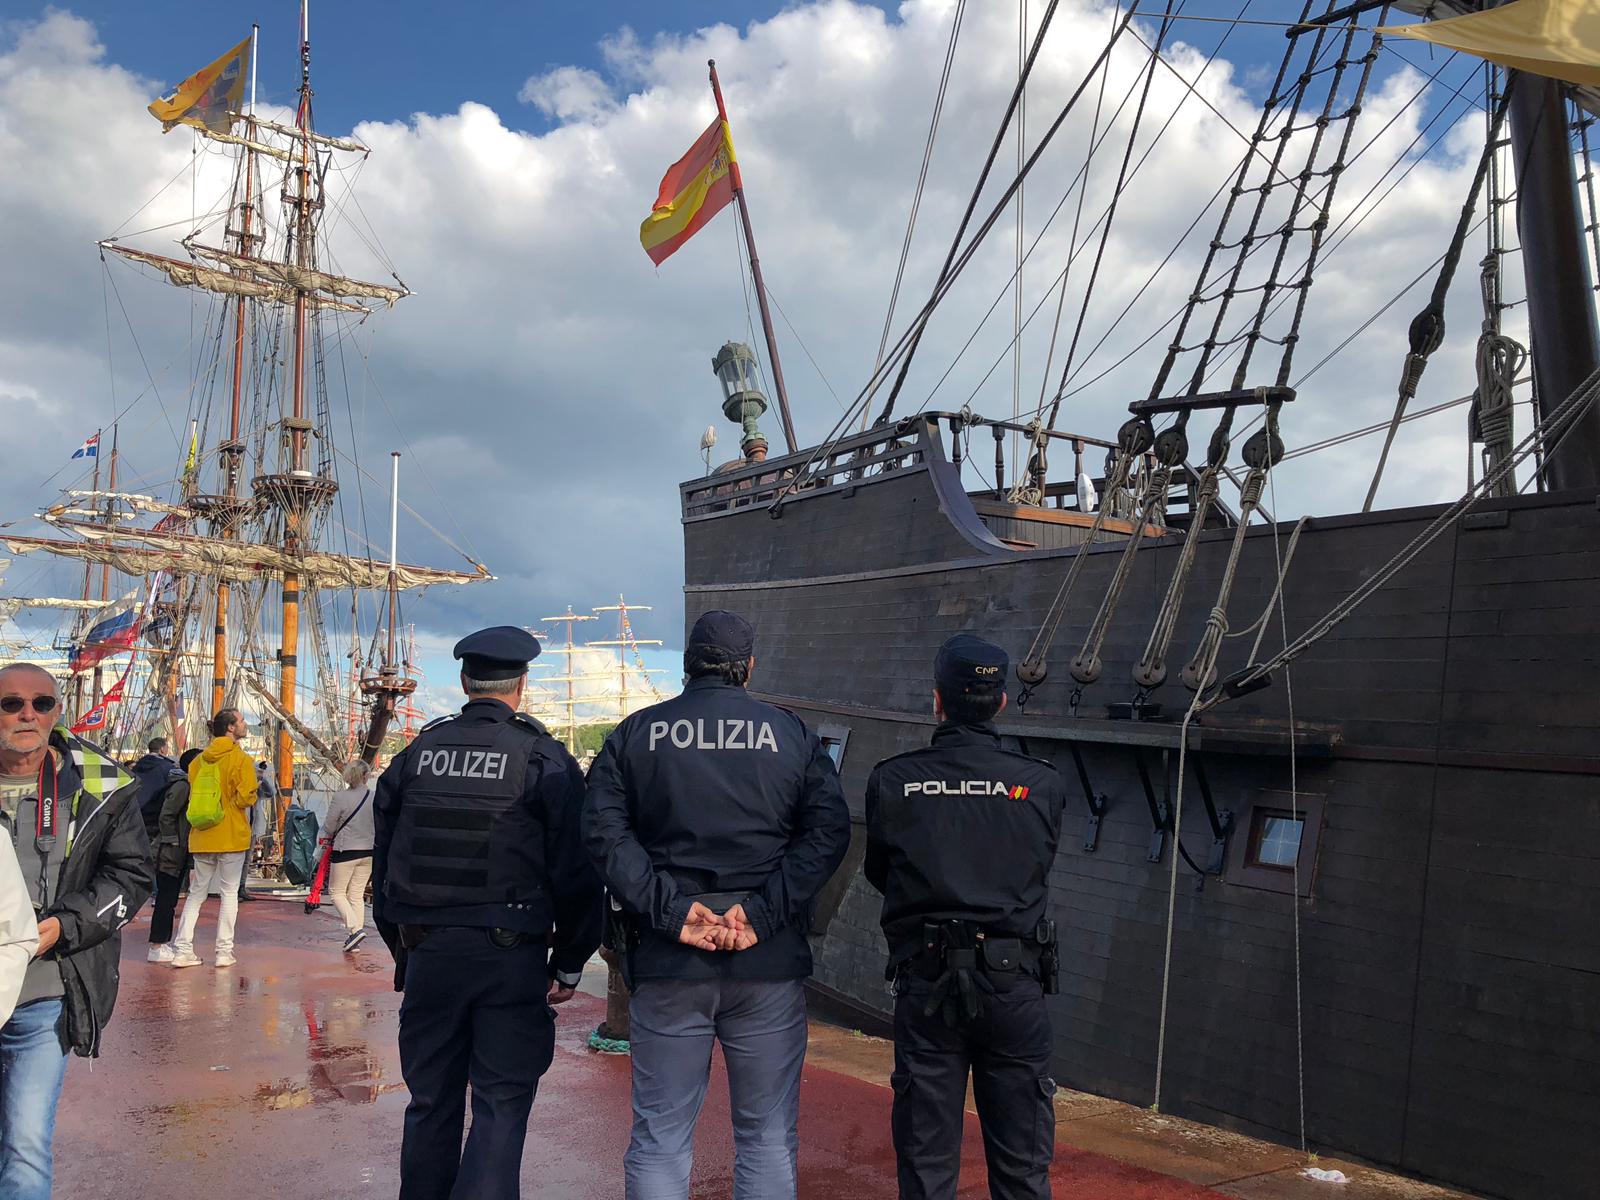 Polizia Nazionala beste herrialdeetako eragileekin uniformados txalupa aurrean bandera espainiarra.